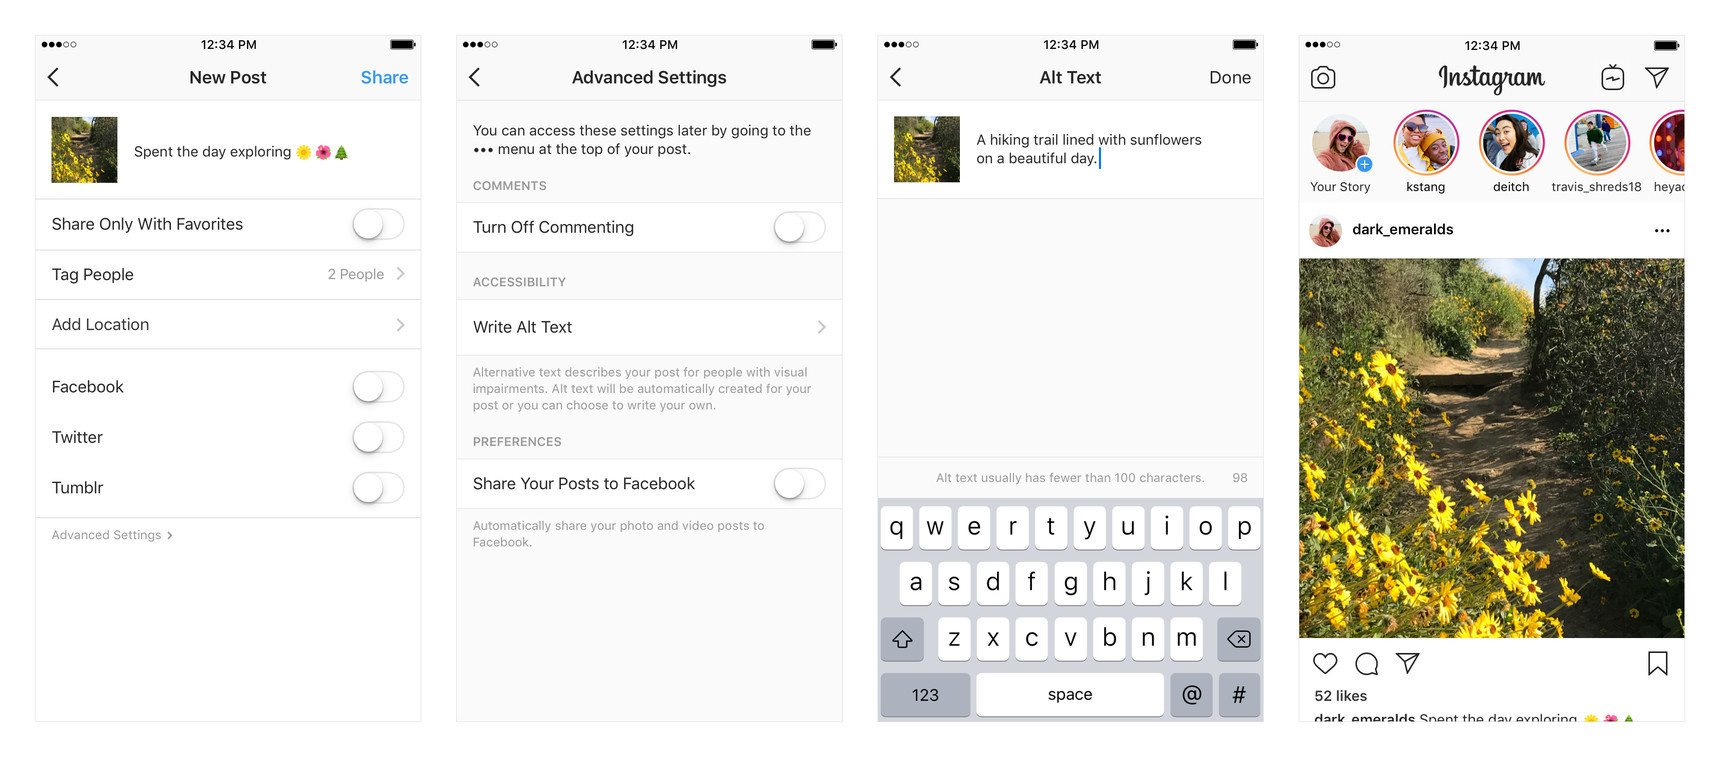 Скриншоты Instagram, демонстрирующие процесс добавления альтернативного текста к изображению